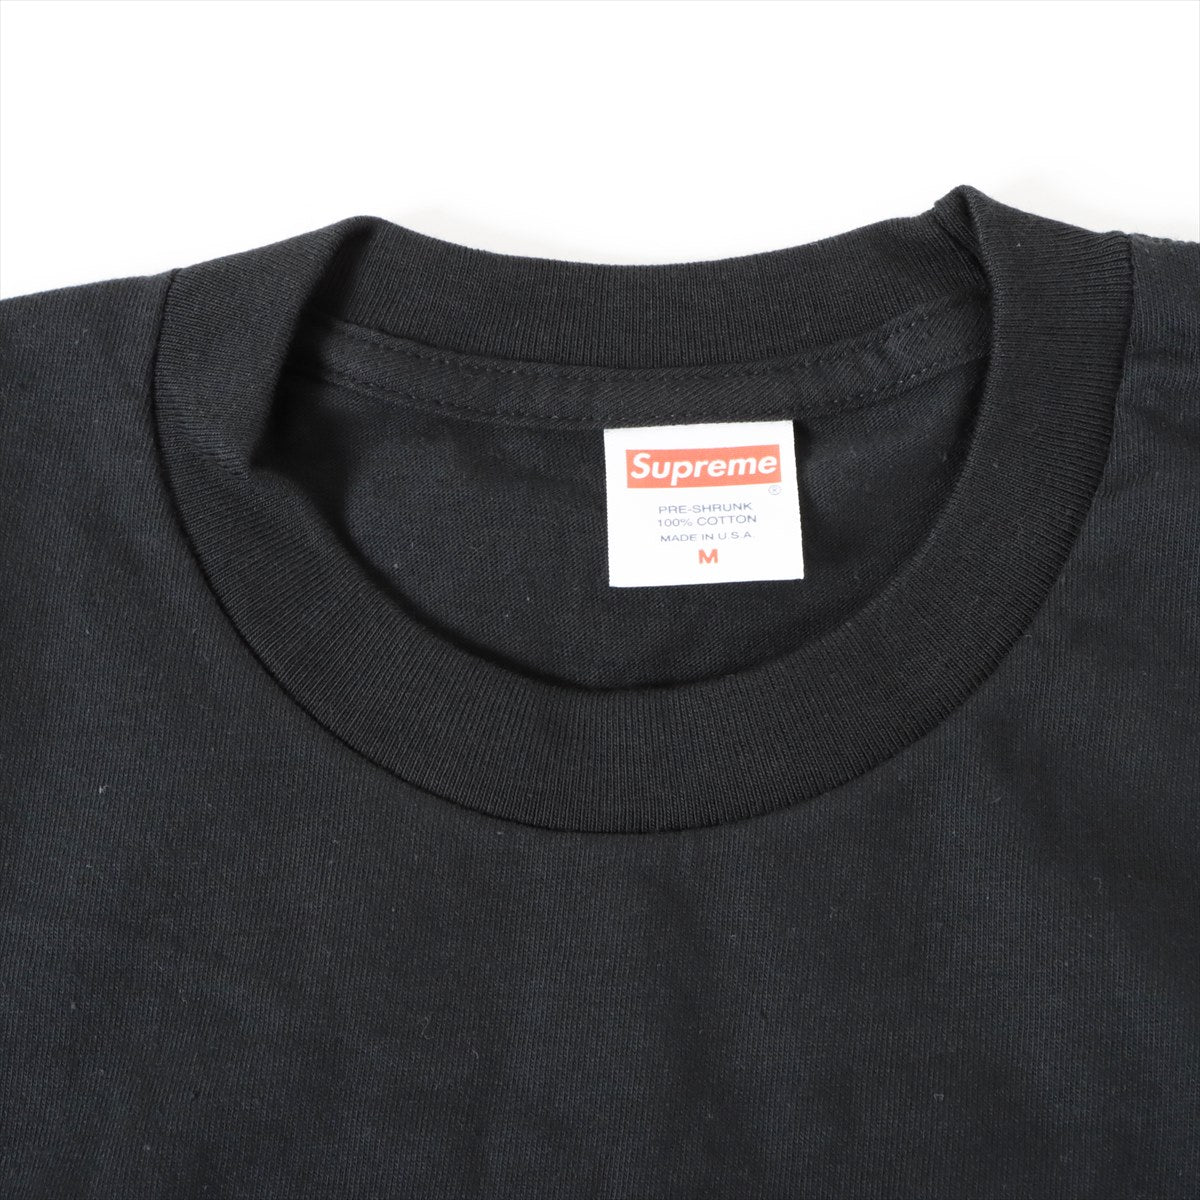 Supreme 23SS Cotton T-shirt M Men's Black  Tonal box logo